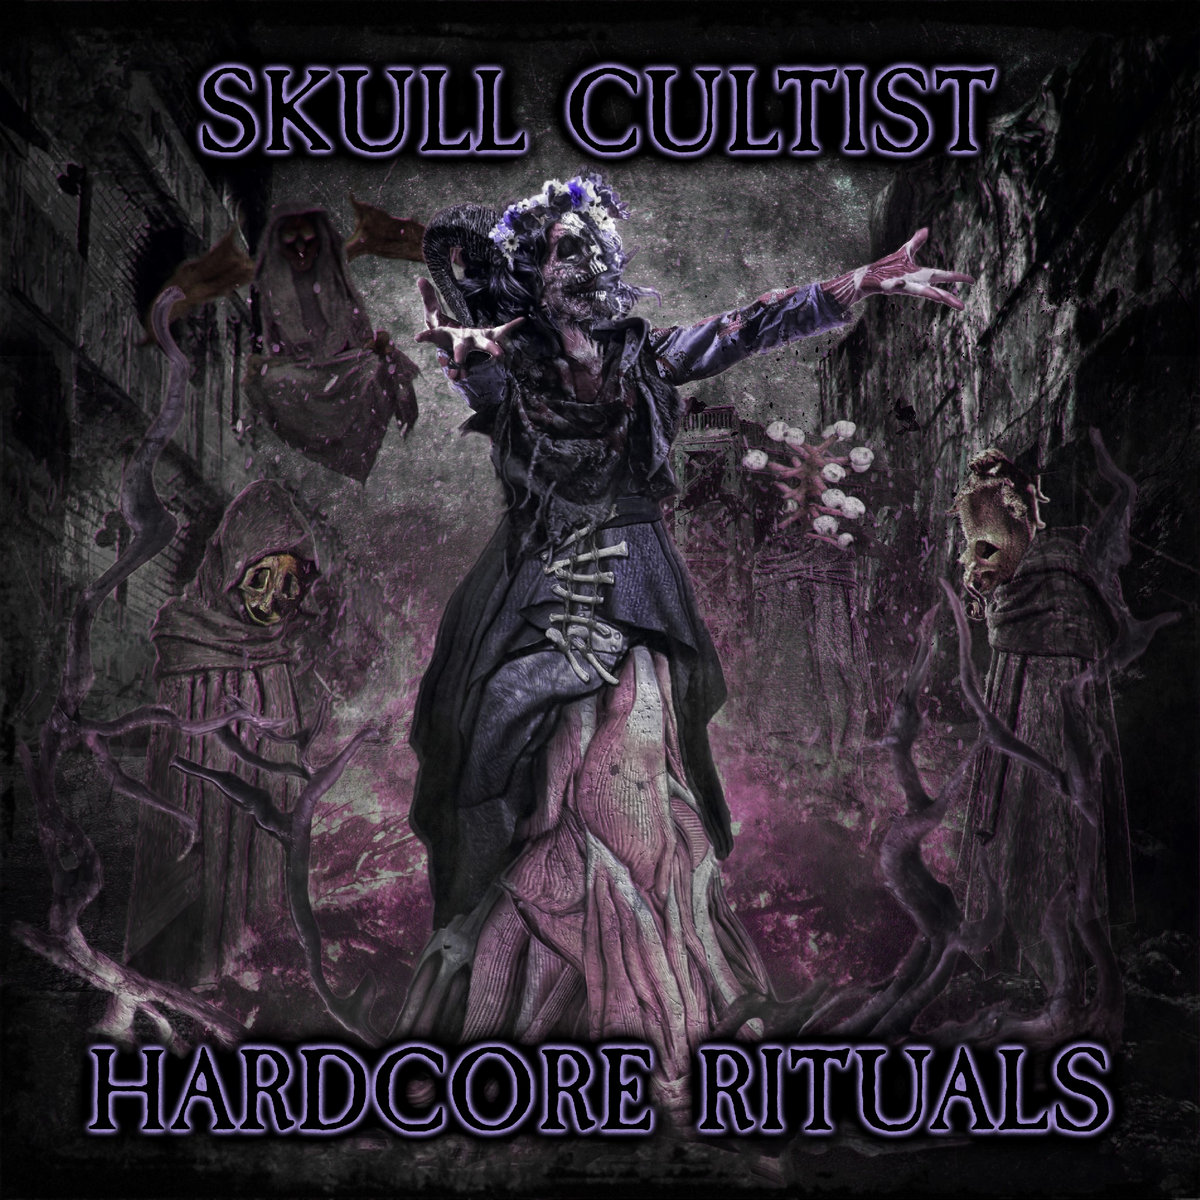 Skull Cultist, “Hardcore Rituals”